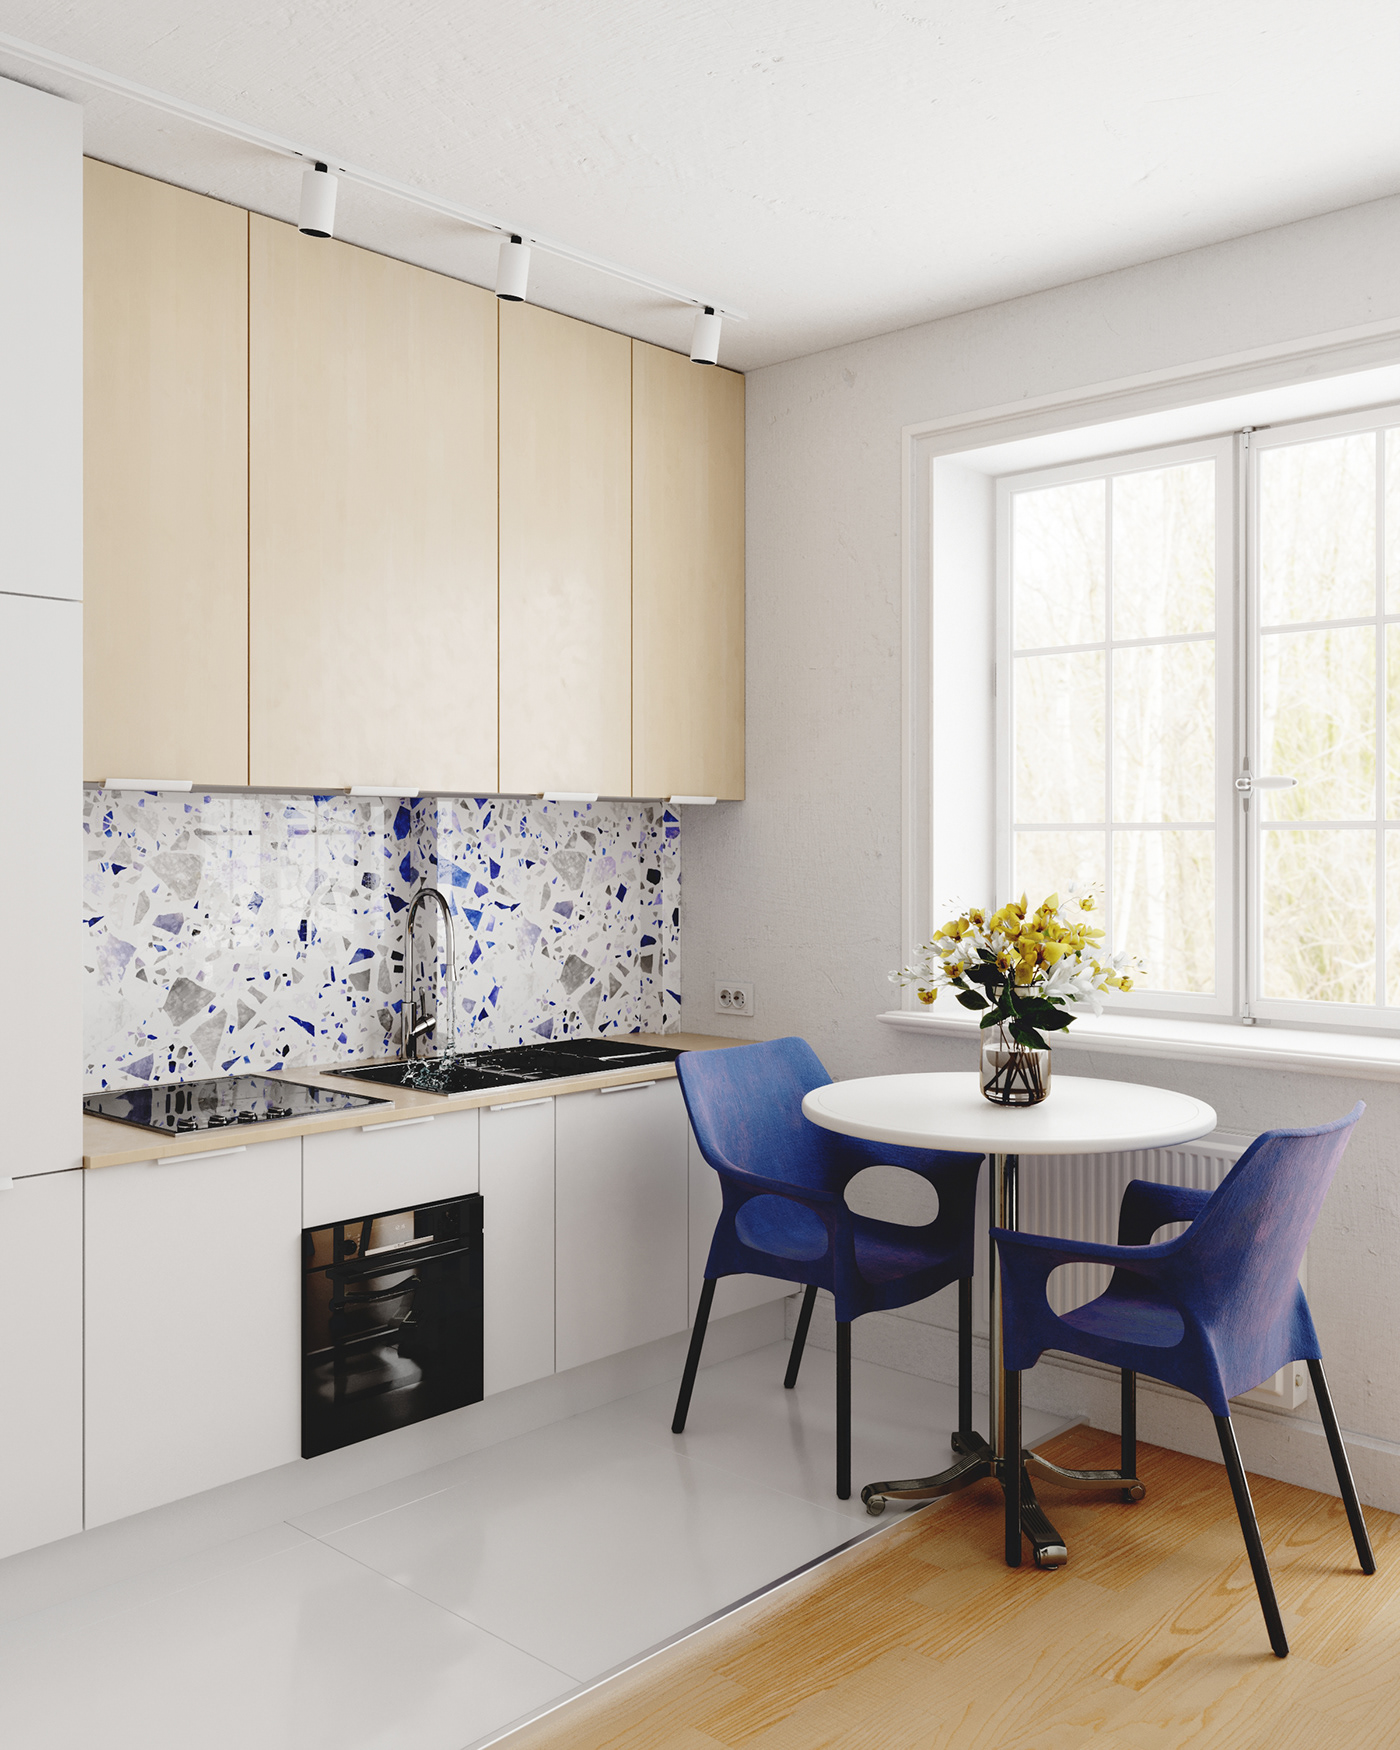 3D architecture archviz interior design  kitchen Render rendering Scandinavian visualization